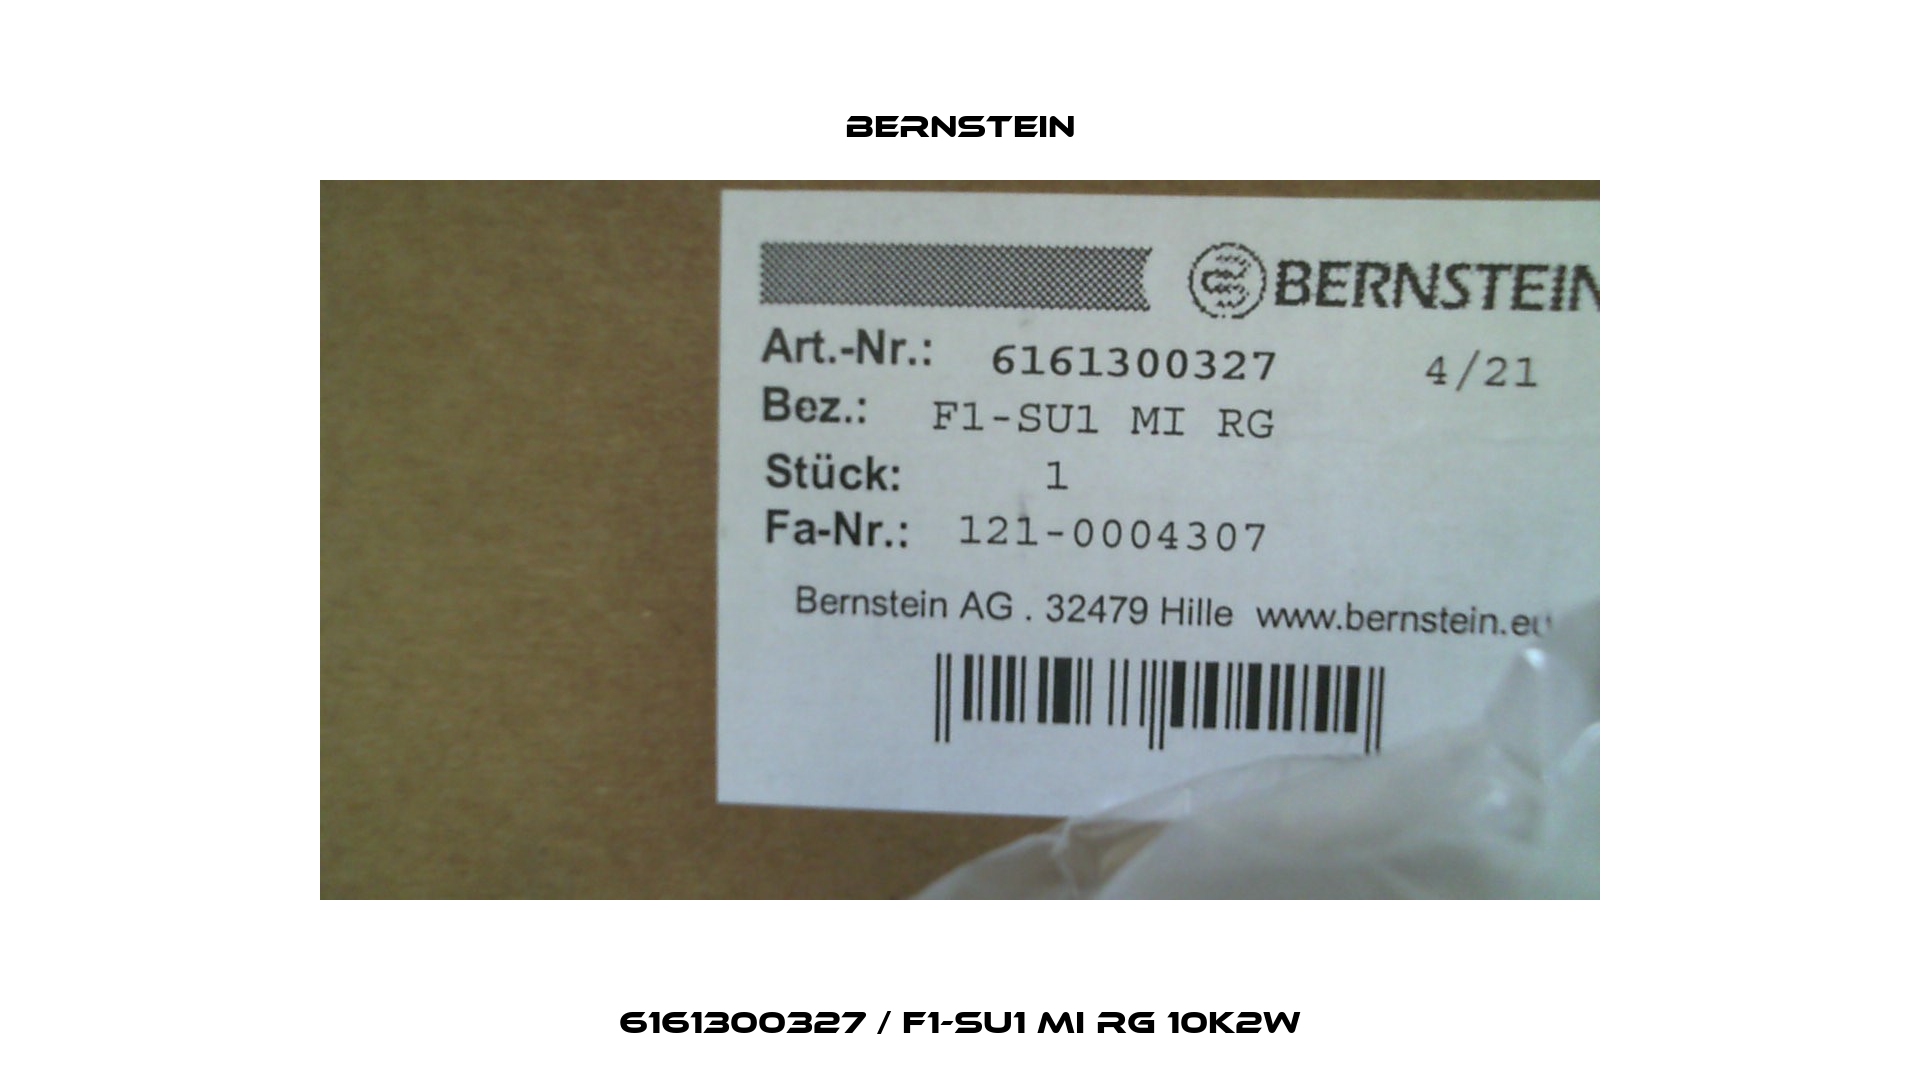 6161300327 / F1-SU1 MI RG 10K2W Bernstein